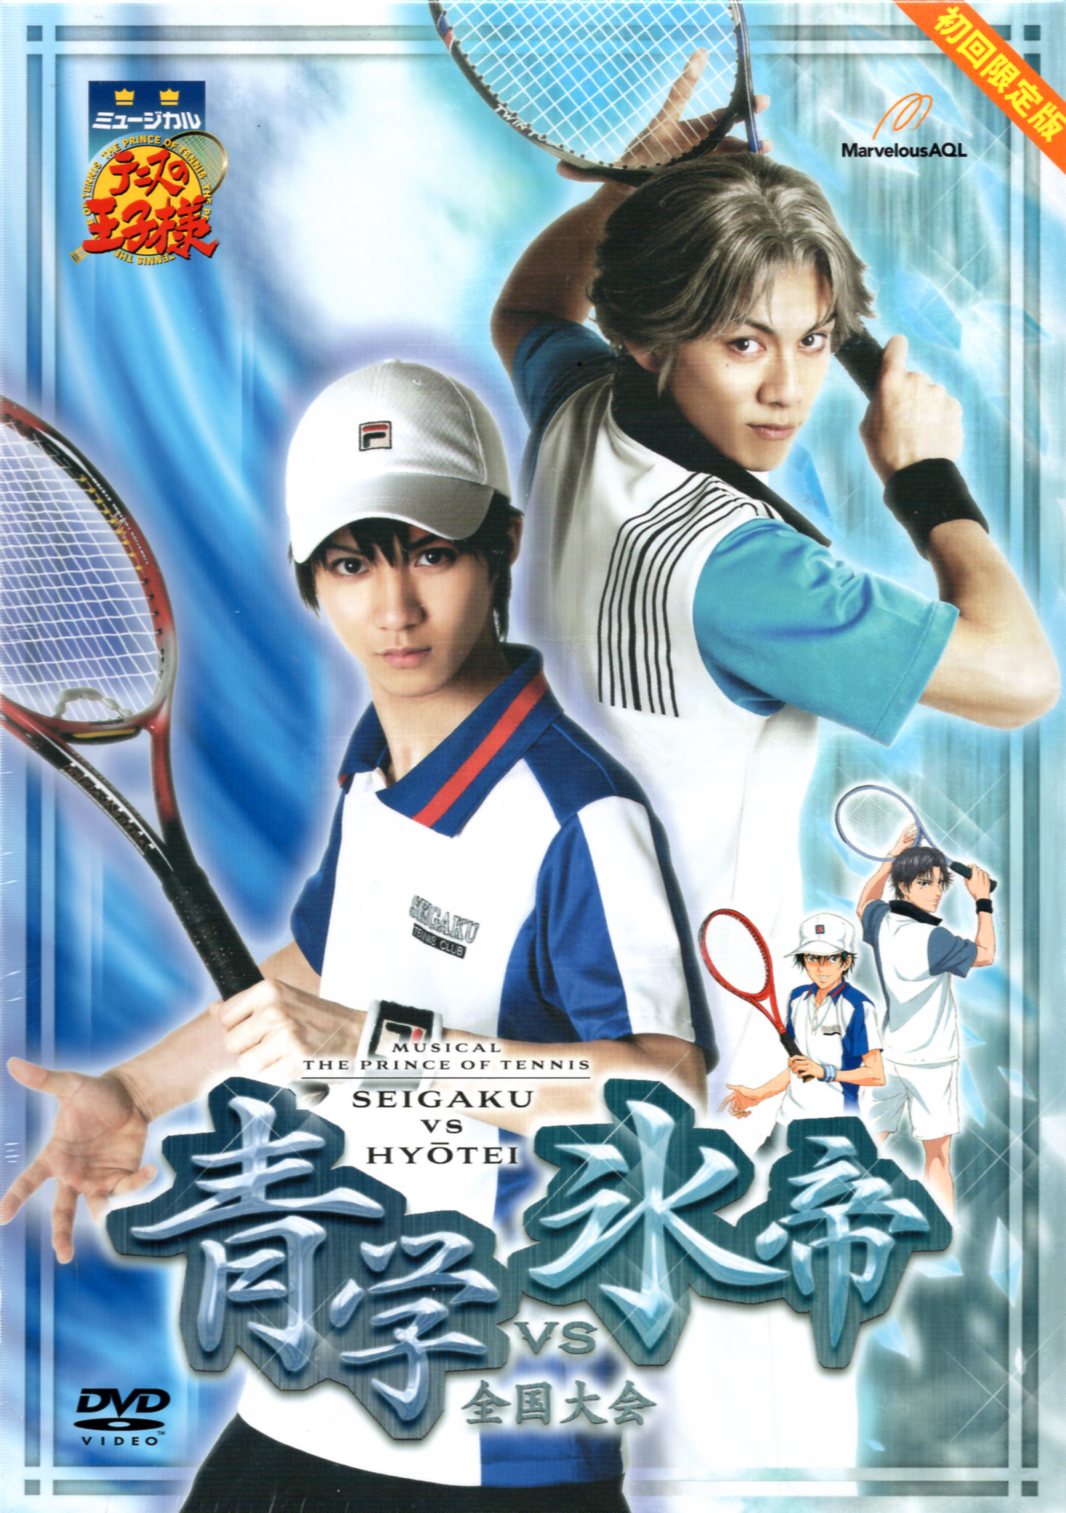 舞台dvd 初回版 ミュージカル テニスの王子様 青学vs氷帝 全国大会 まんだらけ Mandarake